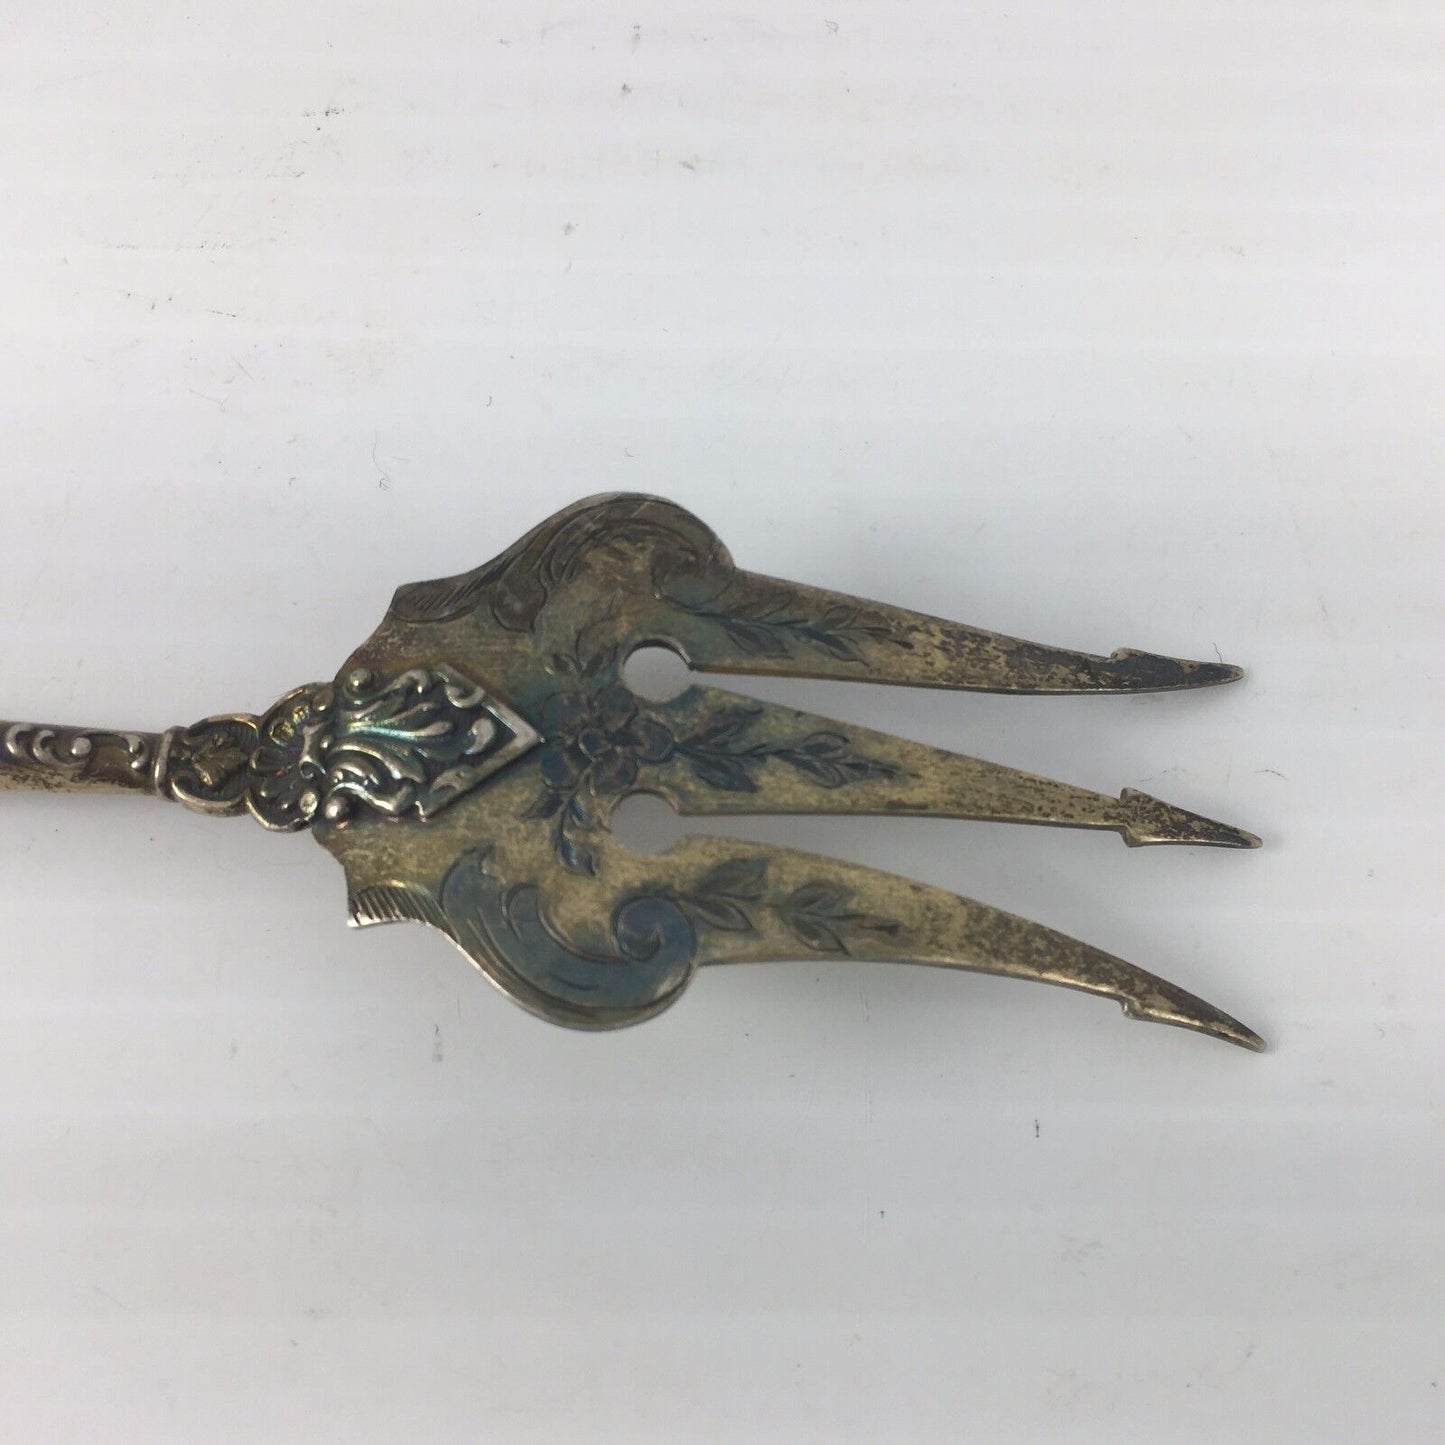 Vintage R&D Silver Gold Washed Ornate Serving Fork, 5-3/4" 14 grams